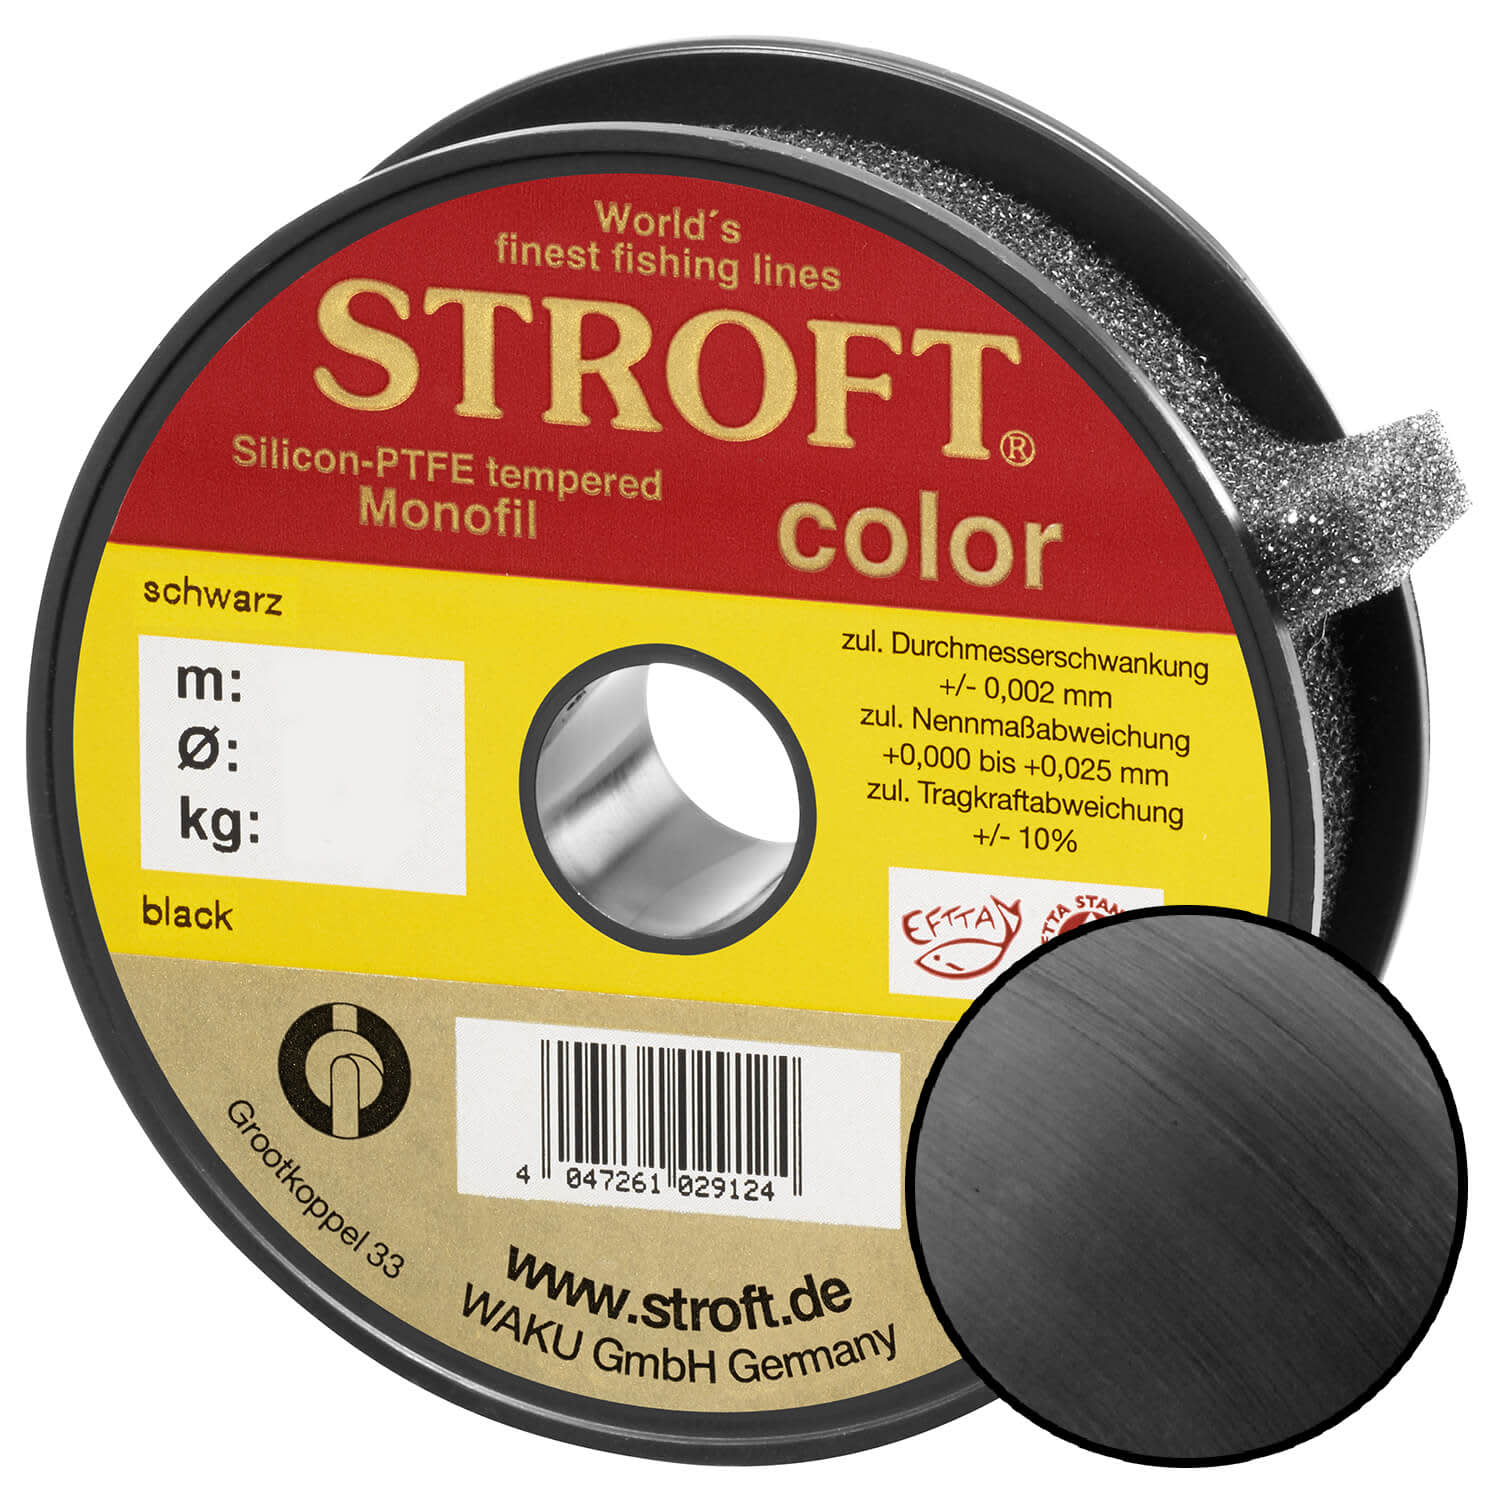 STROFT Color Monofilament Fishing Line Black 0,50mm 19,0kg